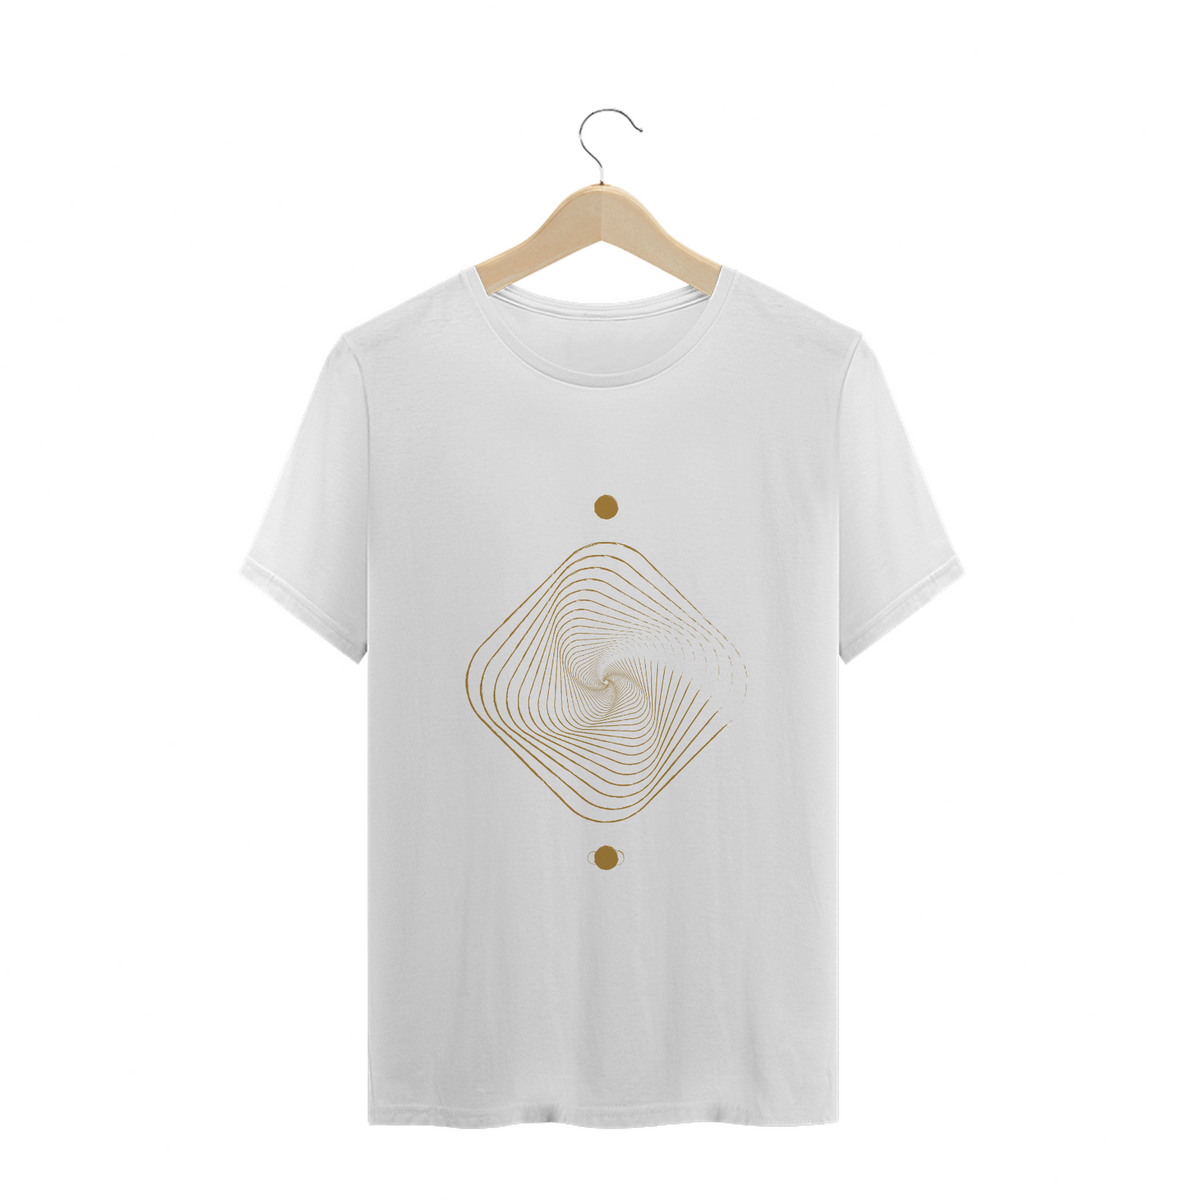 Nome do produto: T-Shirt Geométrica Abstrata 